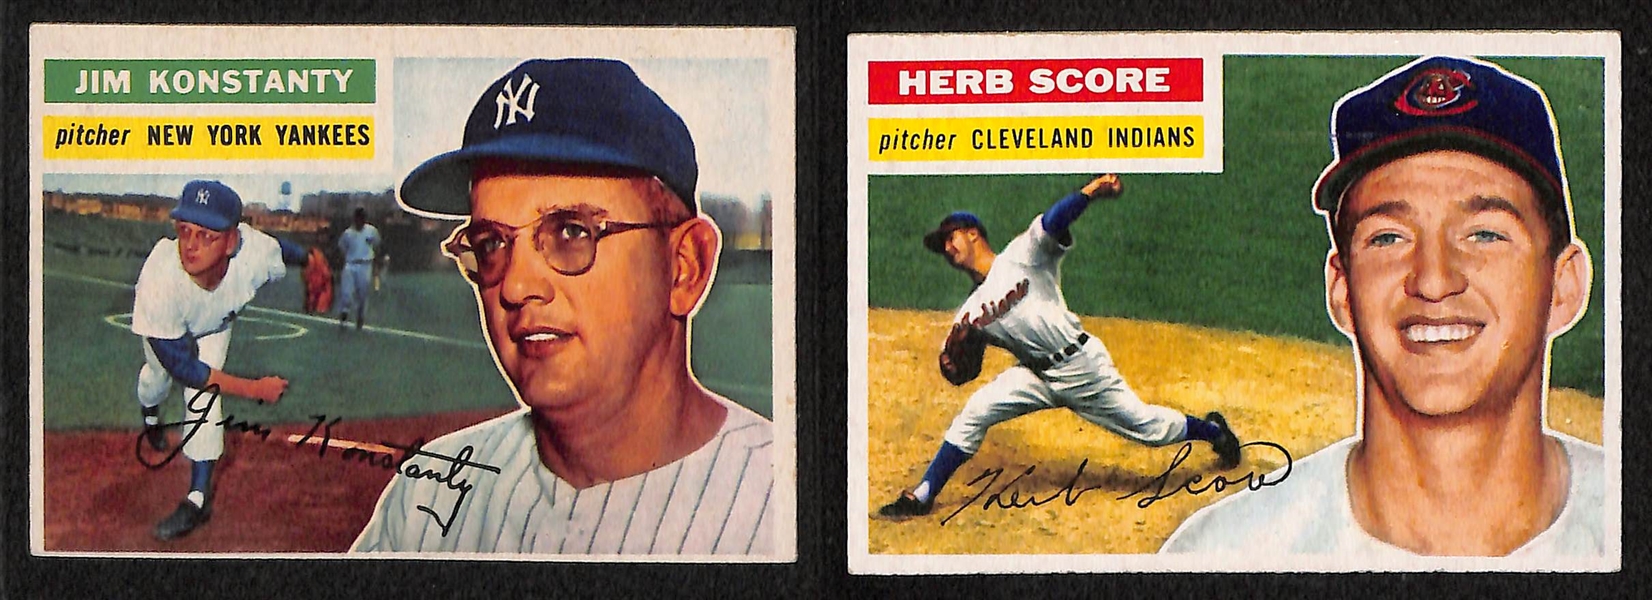 Lot of 68 - 1956 Topps Baseball Cards w. Don Larsen